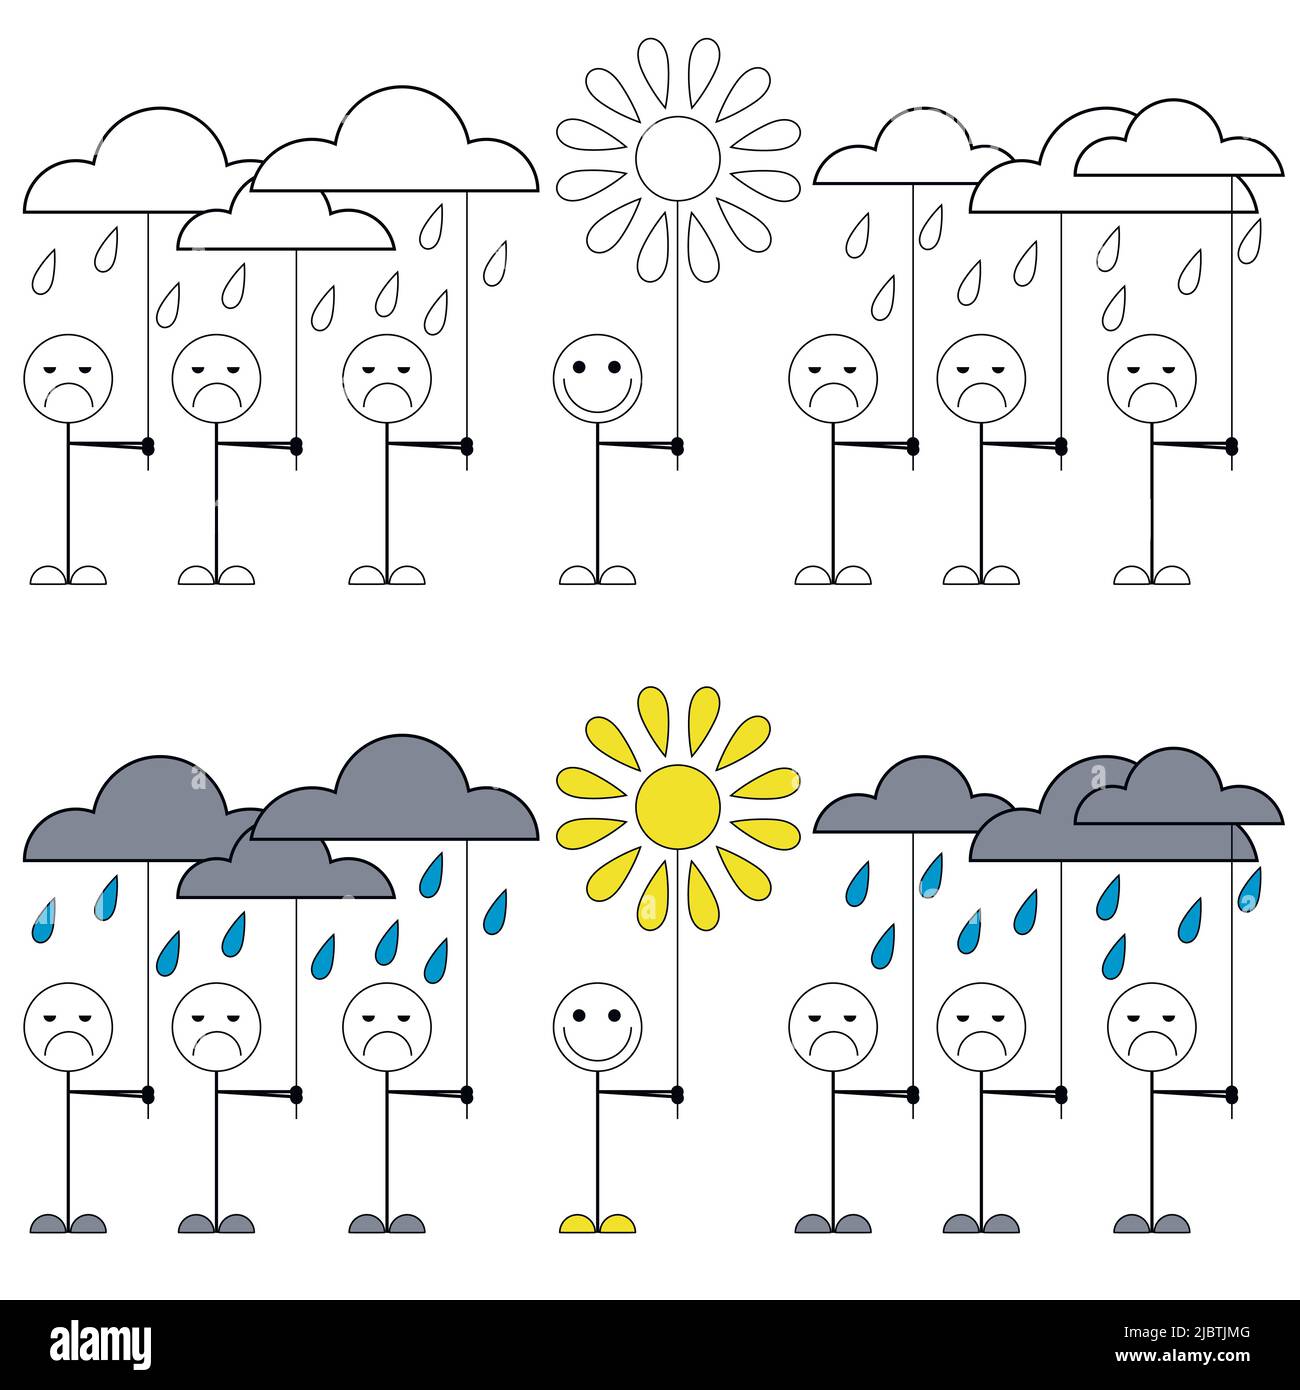 Gut gelaunt. Illustration von kleinen Männern mit traurigen Gesichtern und einem glücklichen. Eine Zeichnung, die zeigt, wie wichtig es ist, eine positive Einstellung zu haben. Stock Vektor